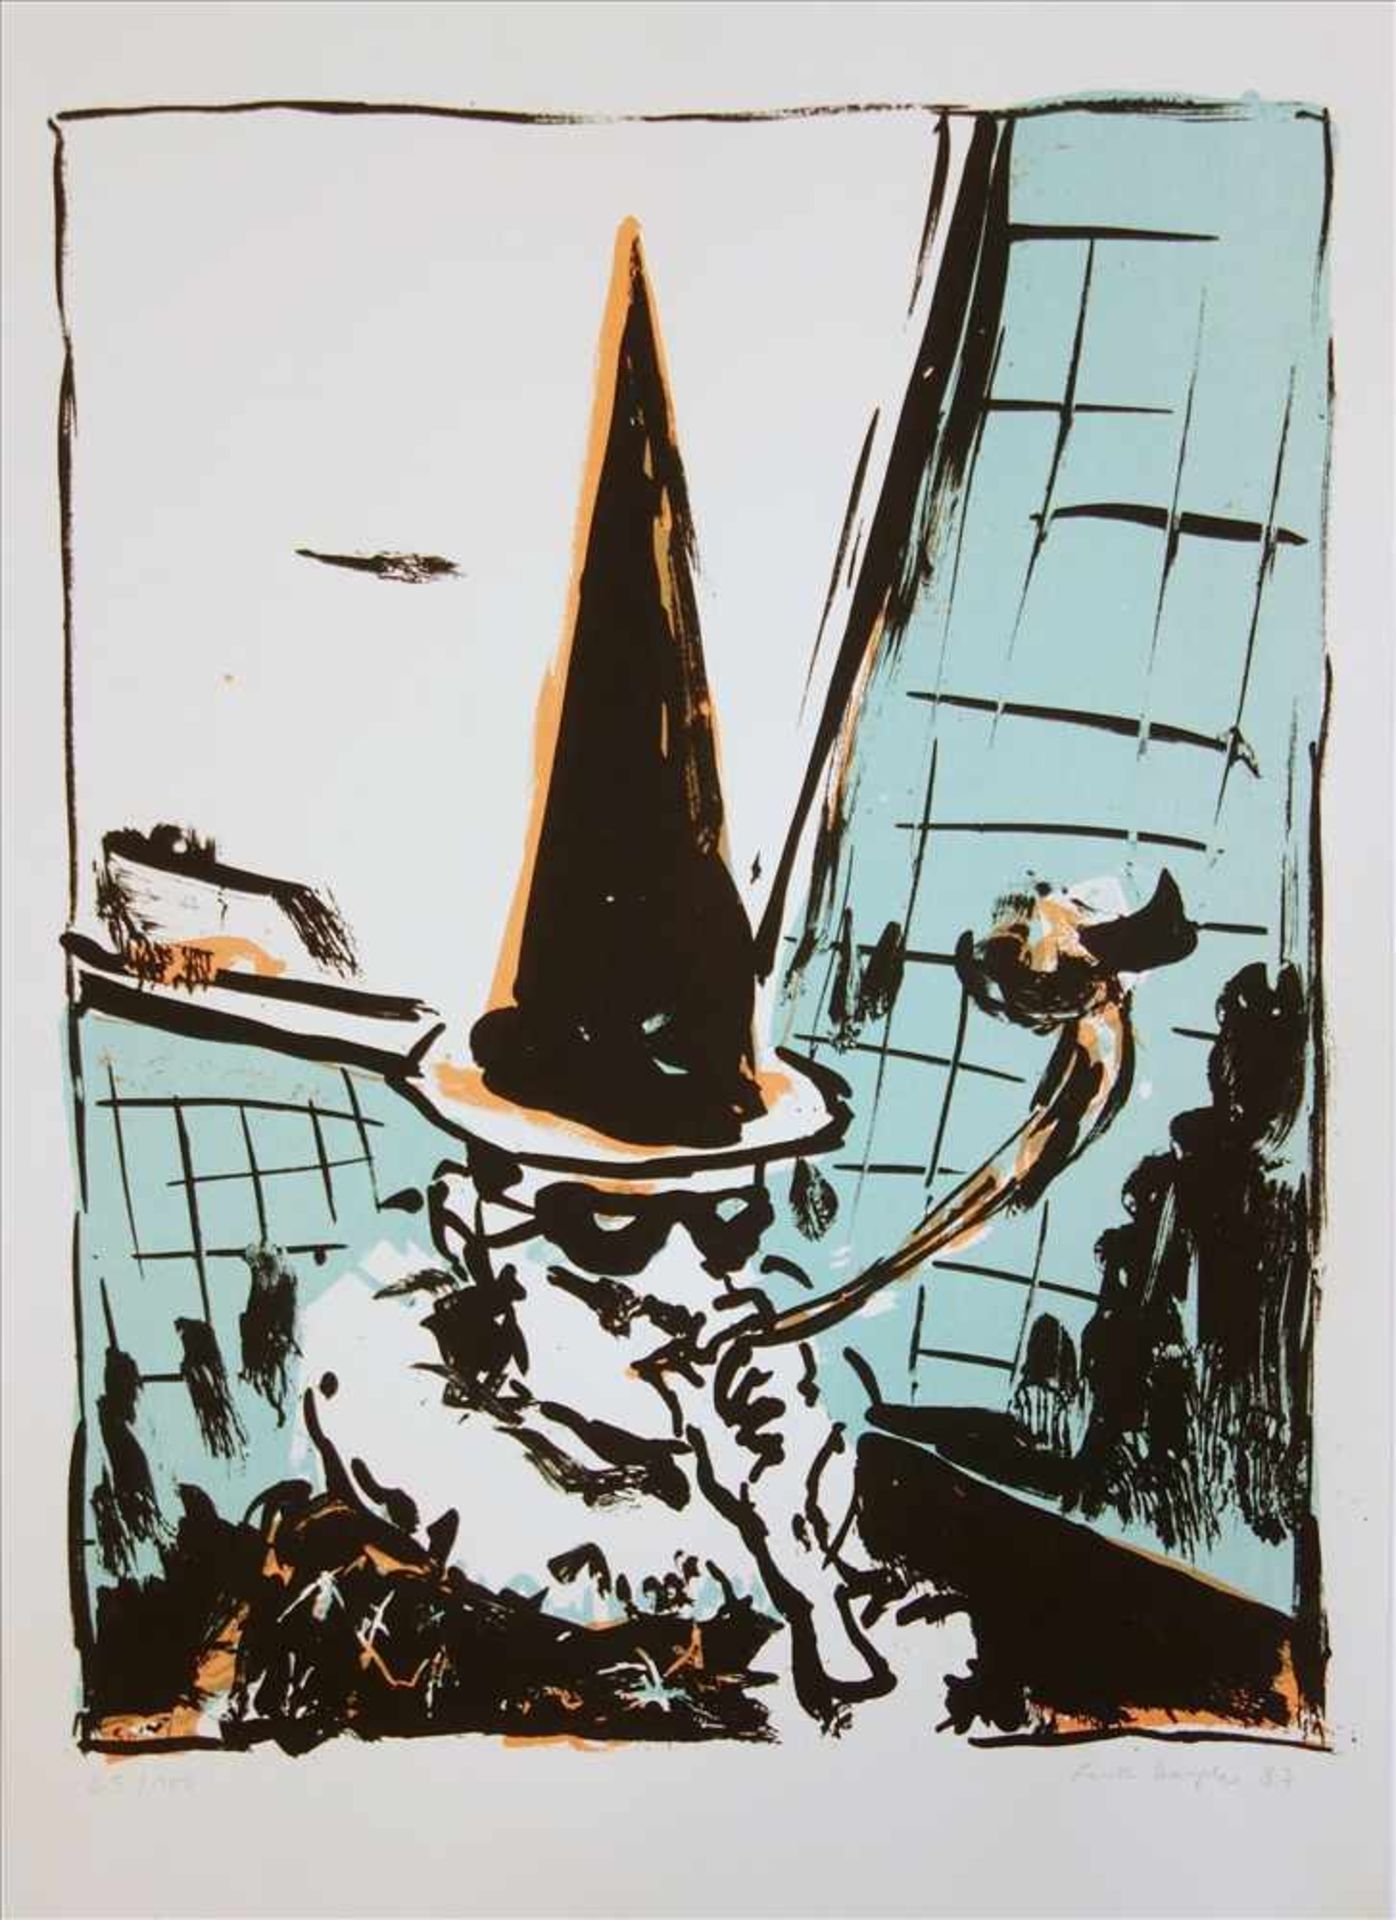 Lutz Heyder (1950-2000), "Zauberer", 1987, Farblithographie, u.r. signiert/datiert, 50,5*36,3cm (